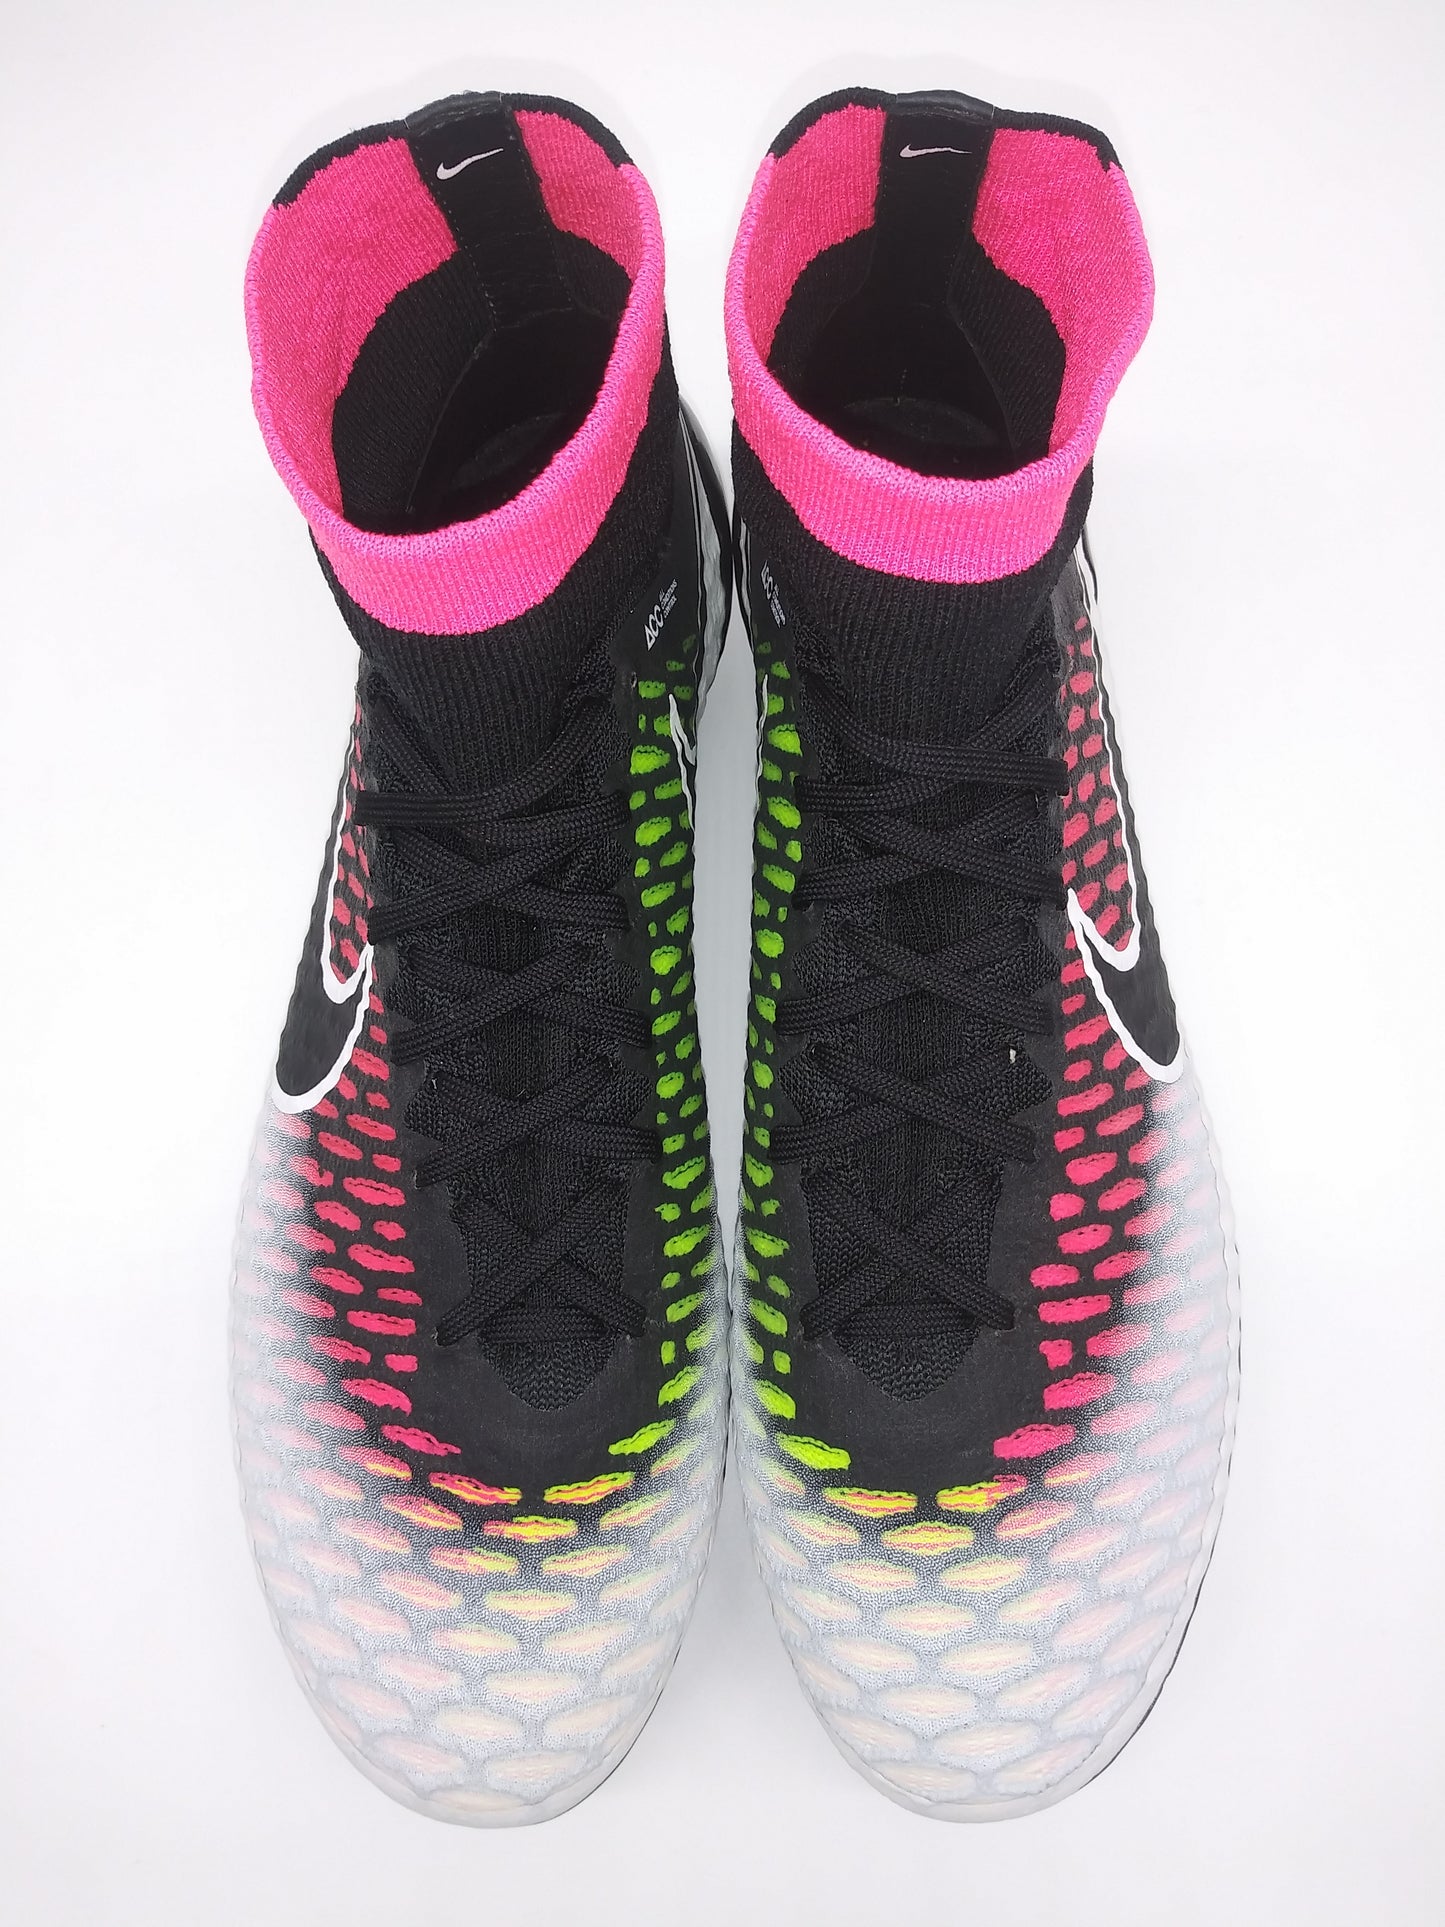 Nike Magista Obra SG White Pink